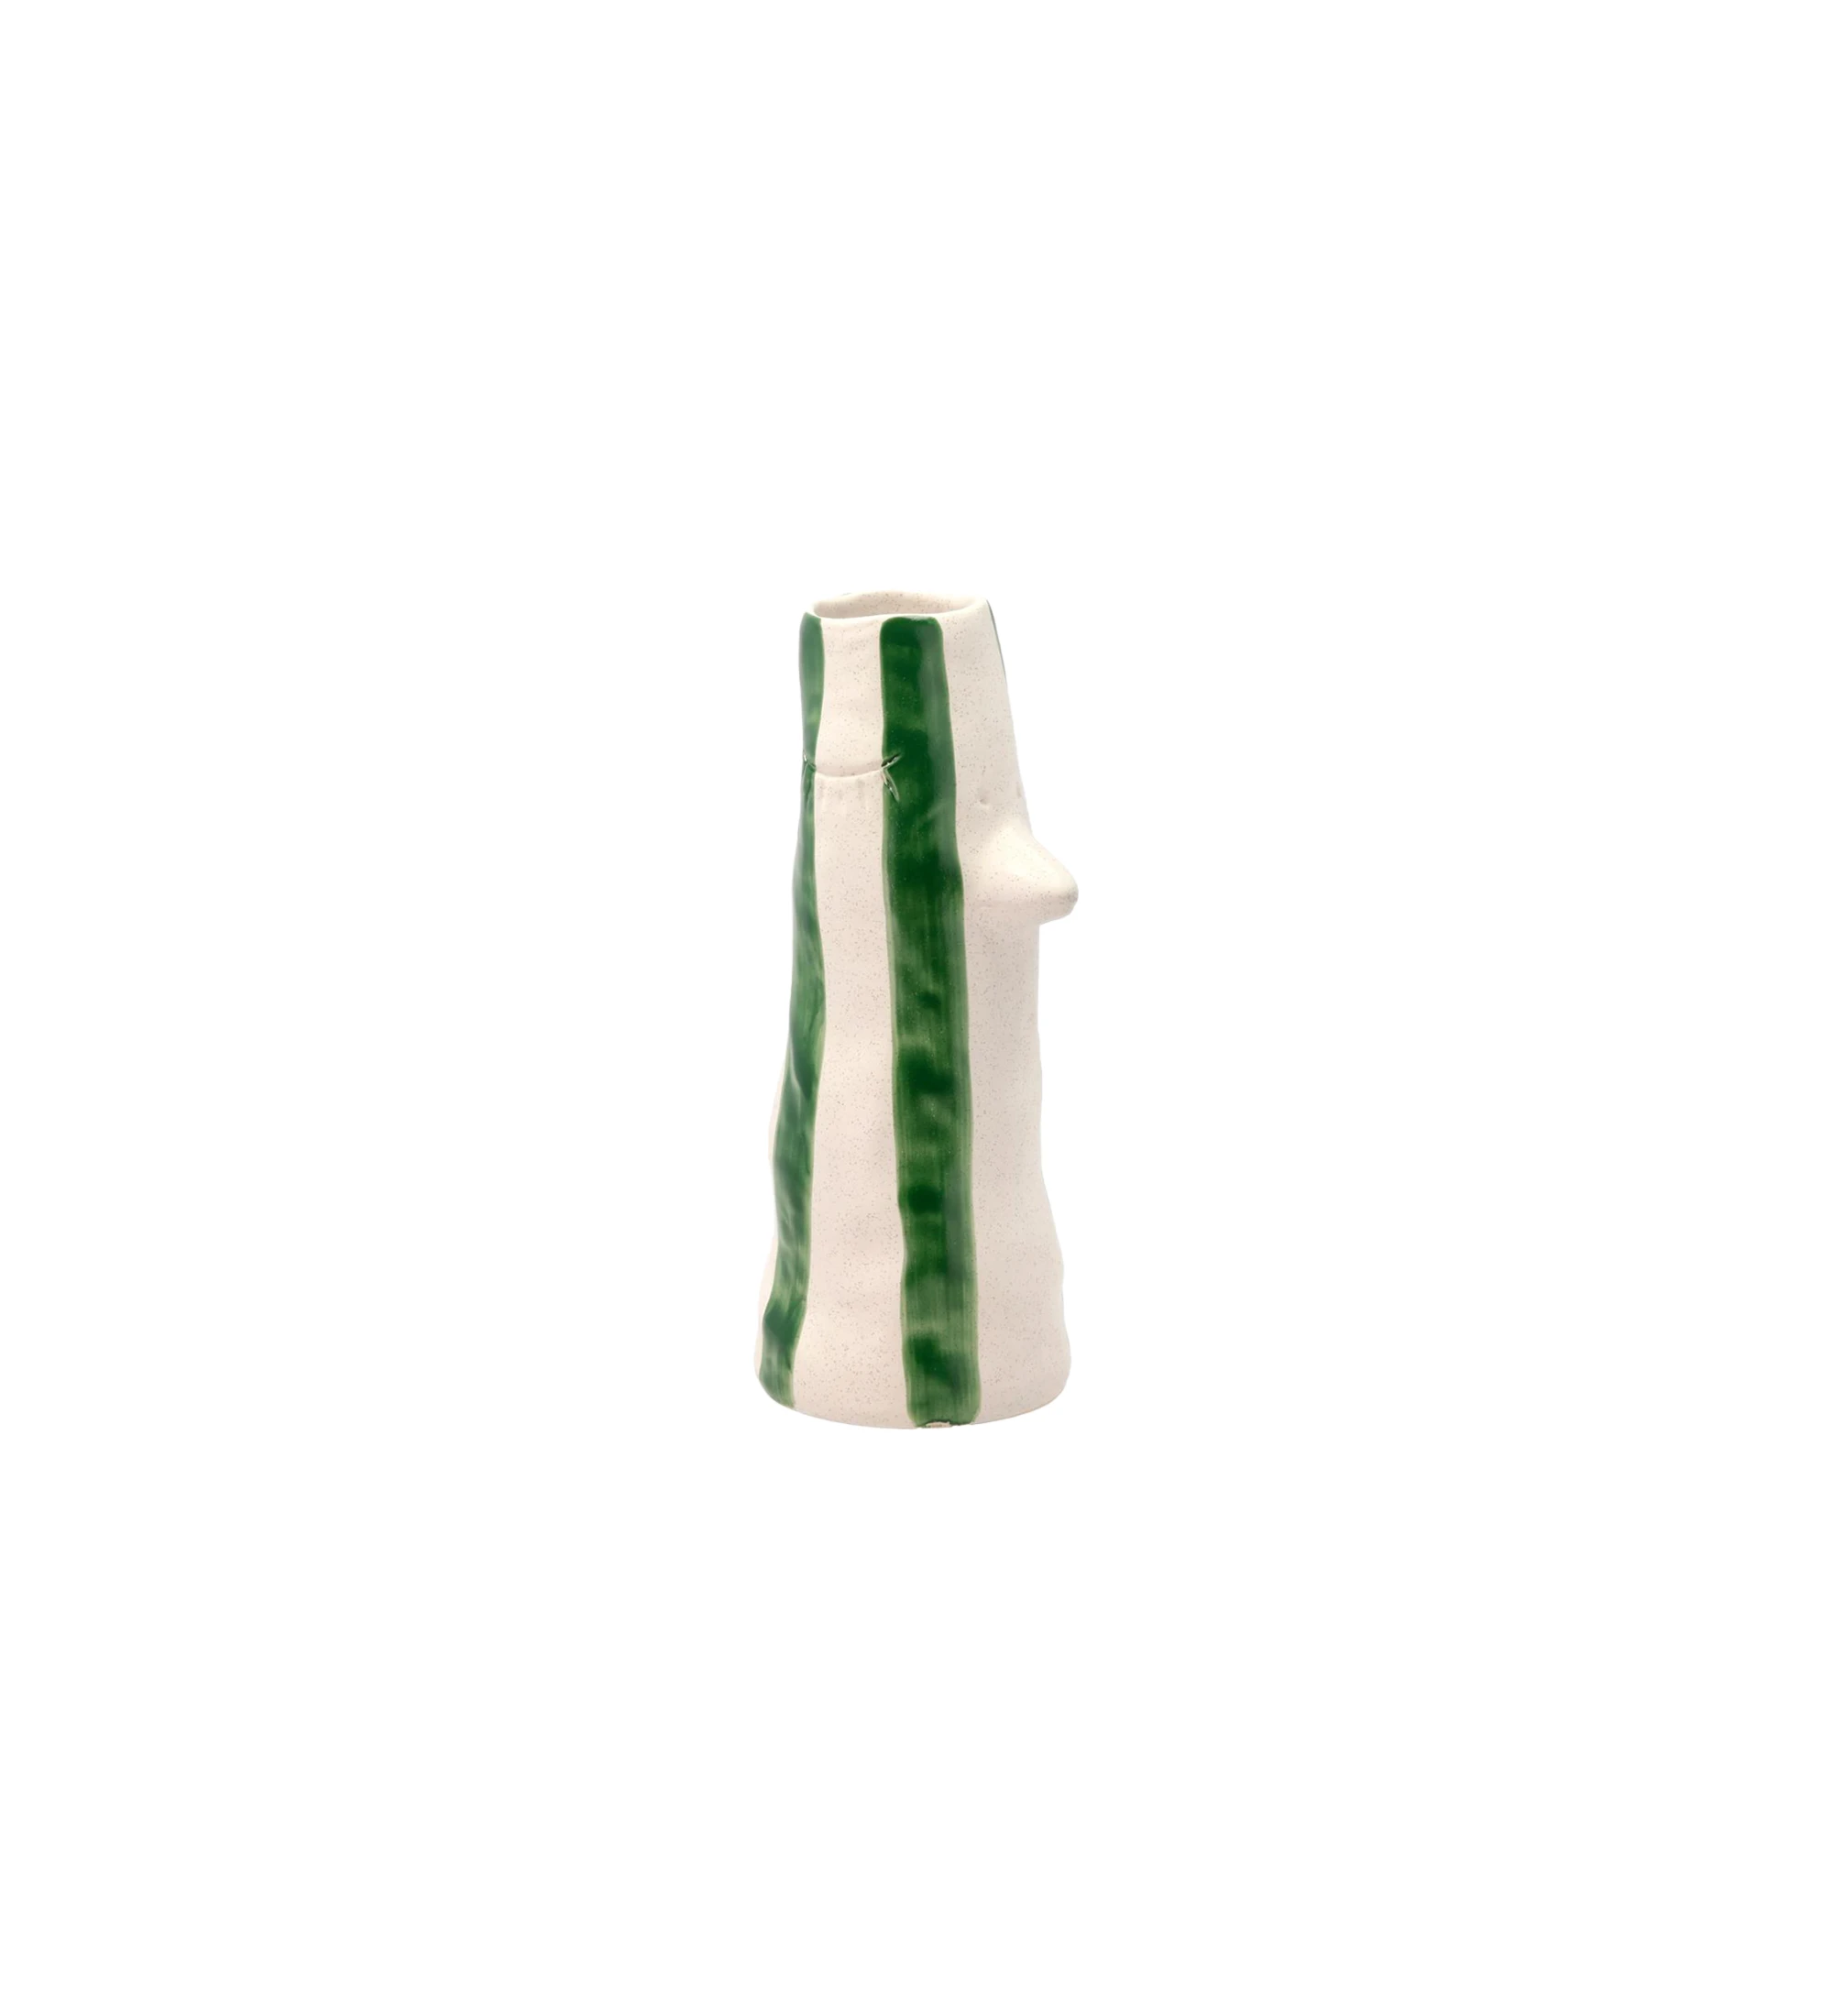 Jarrón de gres con pico y pestañas, decorado con rayas verdes pintadas a mano.